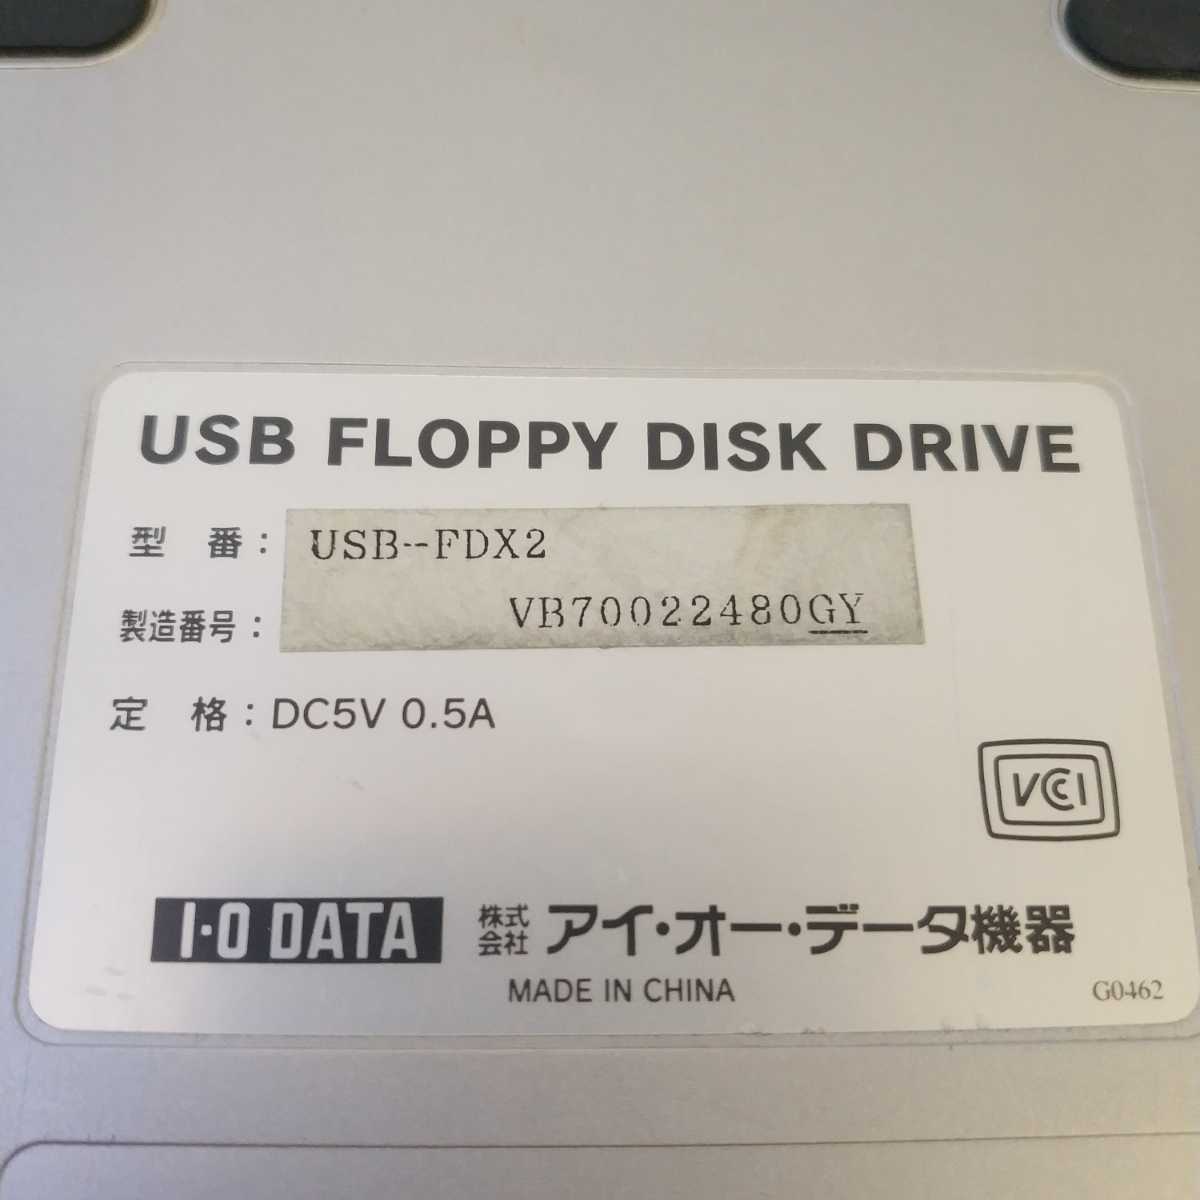 岐阜 即日発 速達 送料無 ★ I-O DATA アイ・オー・データ USB外付けFDD USB-FDX2 2倍速 フロッピーディスクドライブ ★ 動作確認済 Y101p